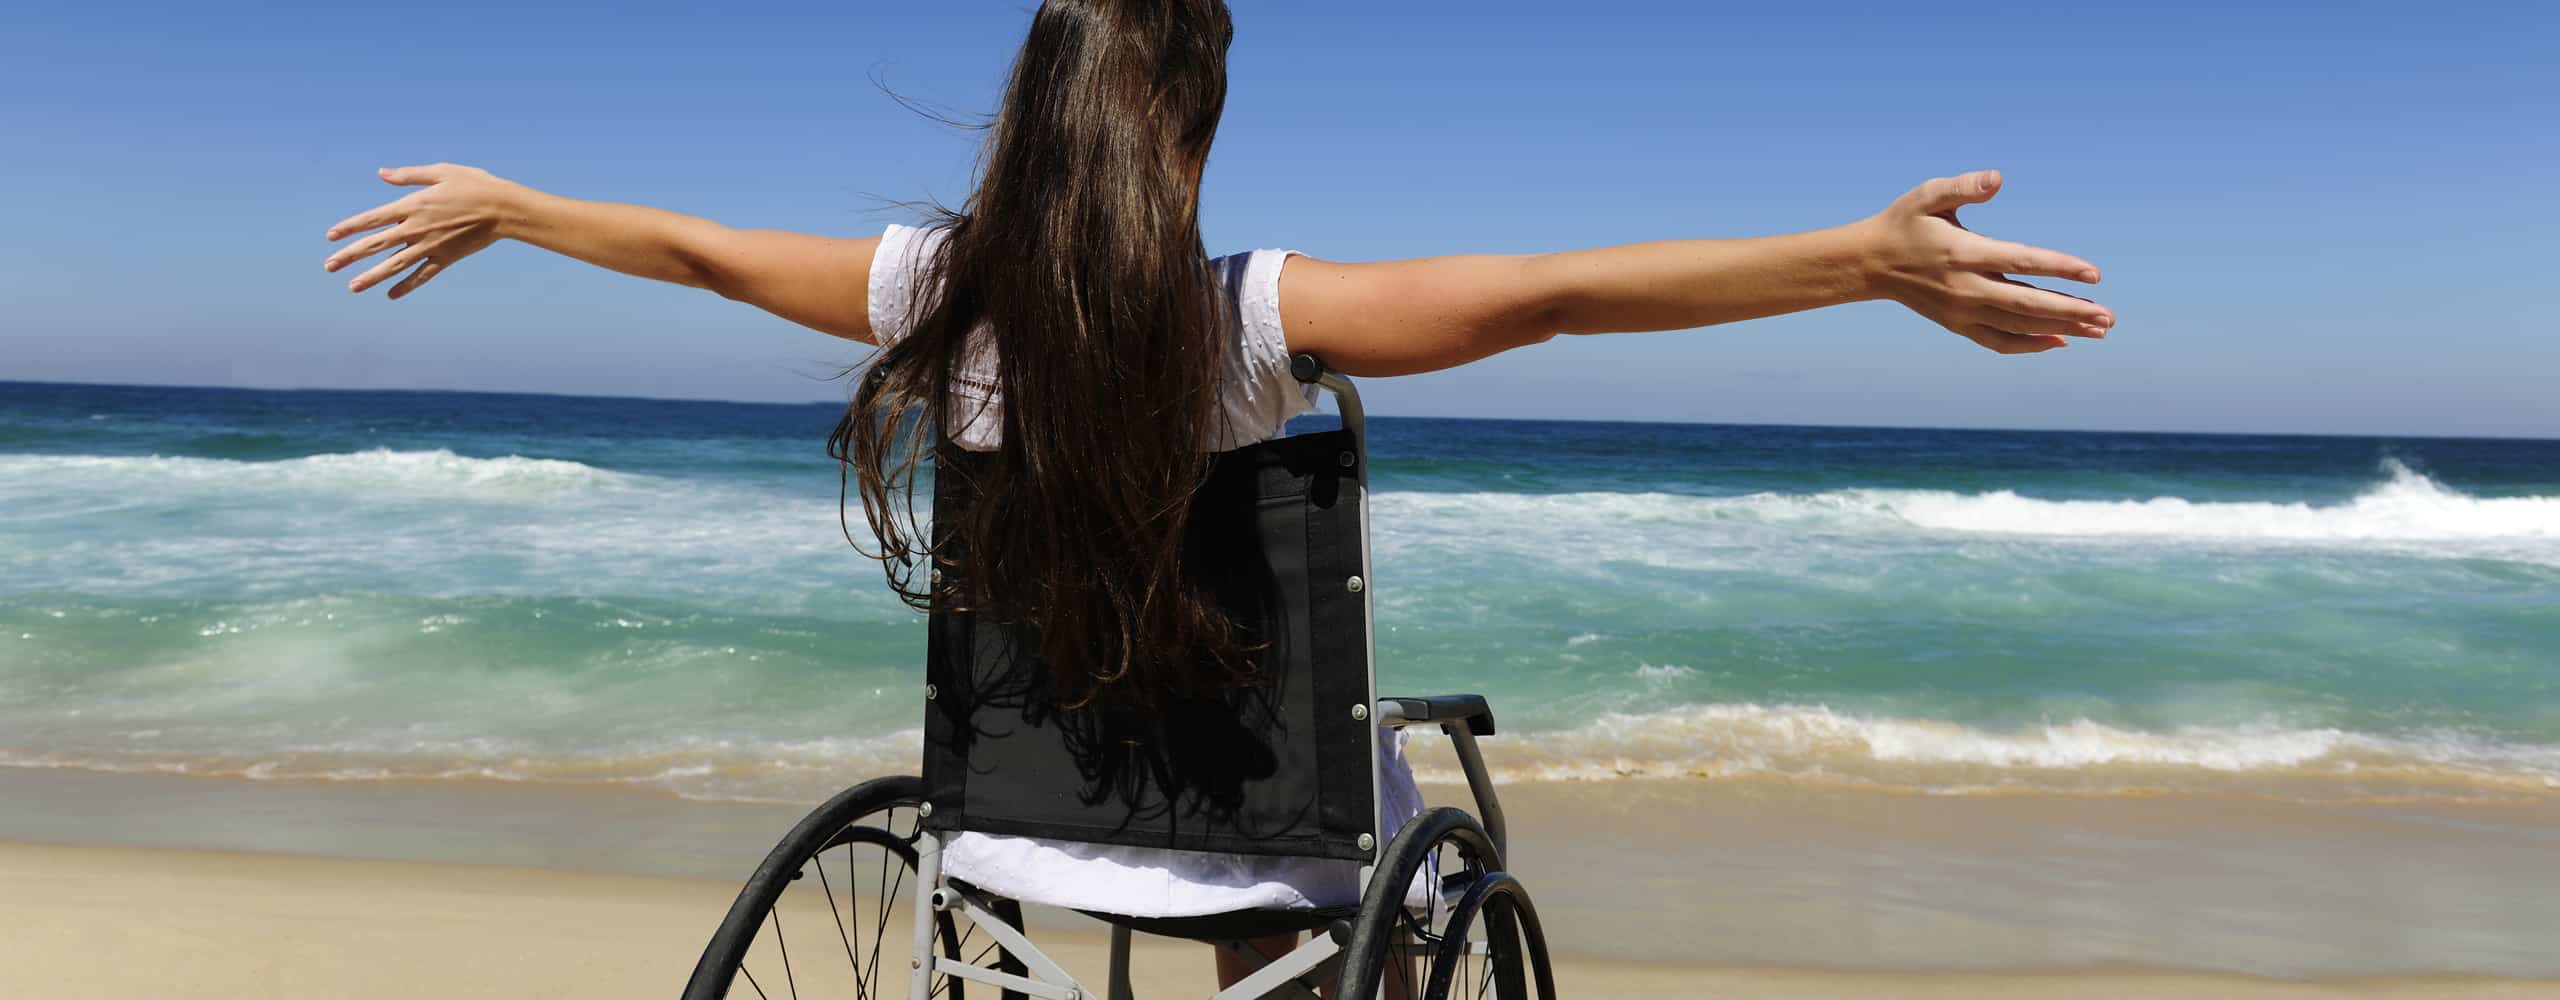 Инвалида отпустили. Человек в инвалидной коляске. Туризм для инвалидов. Счастливые инвалиды. Инвалид в путешествии.